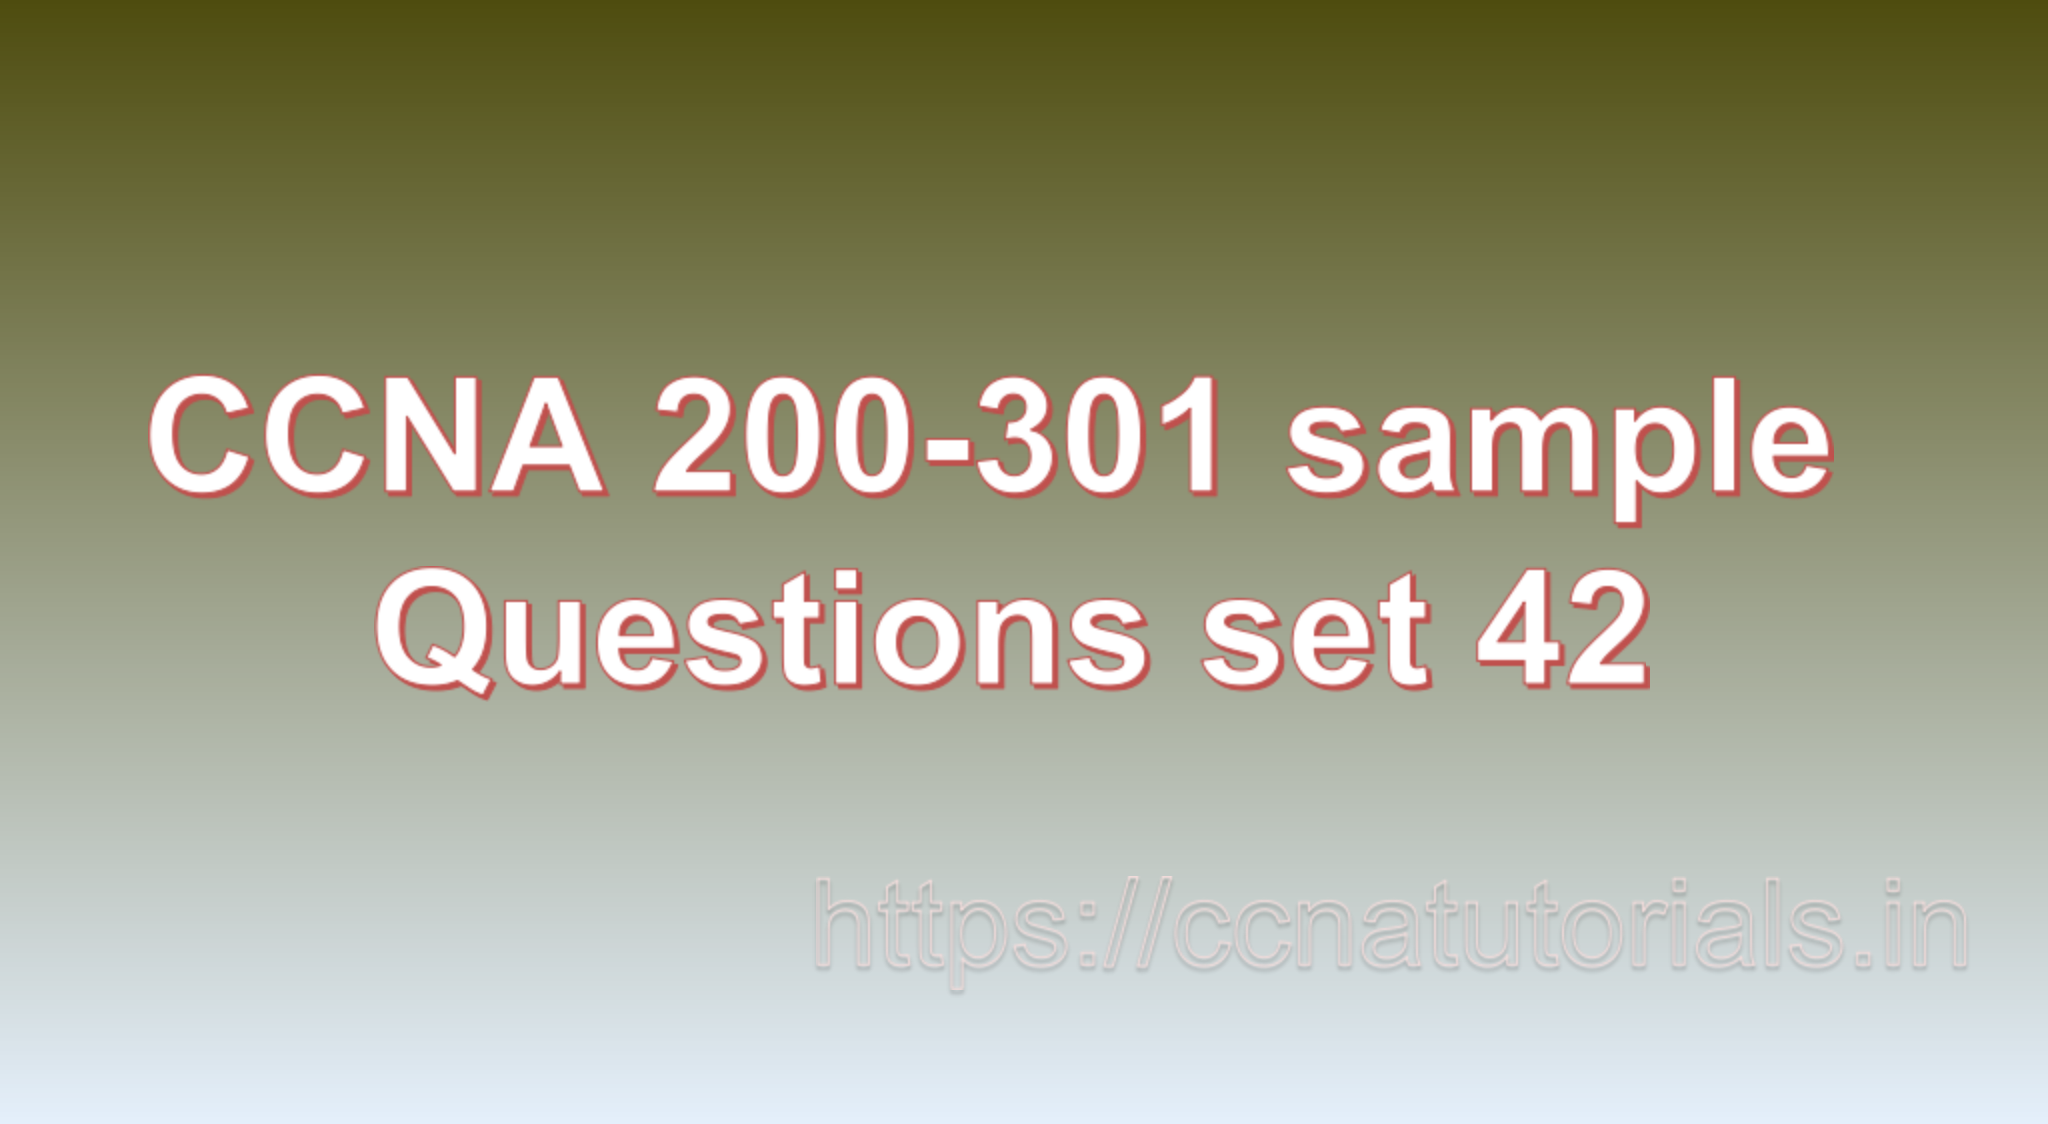 ccna sample questions set 42, ccna tutorials, CCNA Exam, ccna